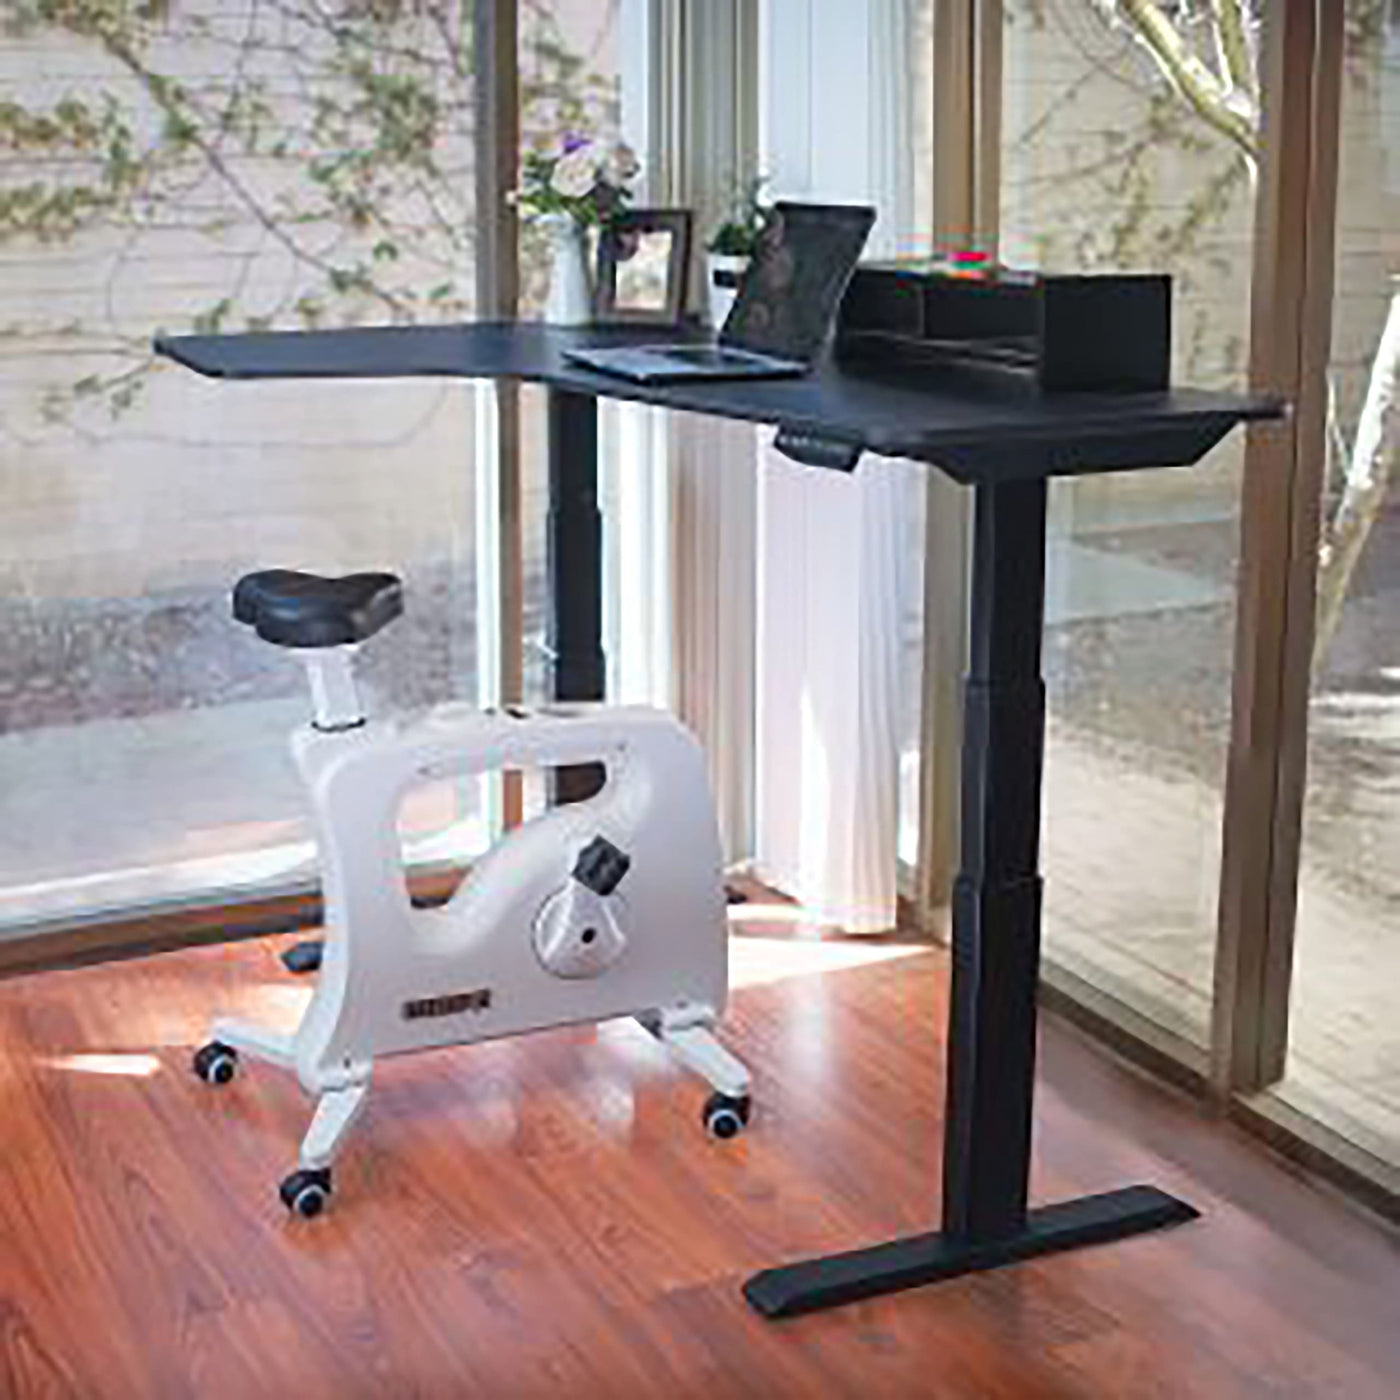 Workfit Desk Bike | Desk Bike | Exercise Desk Bike | Home Office Furniture